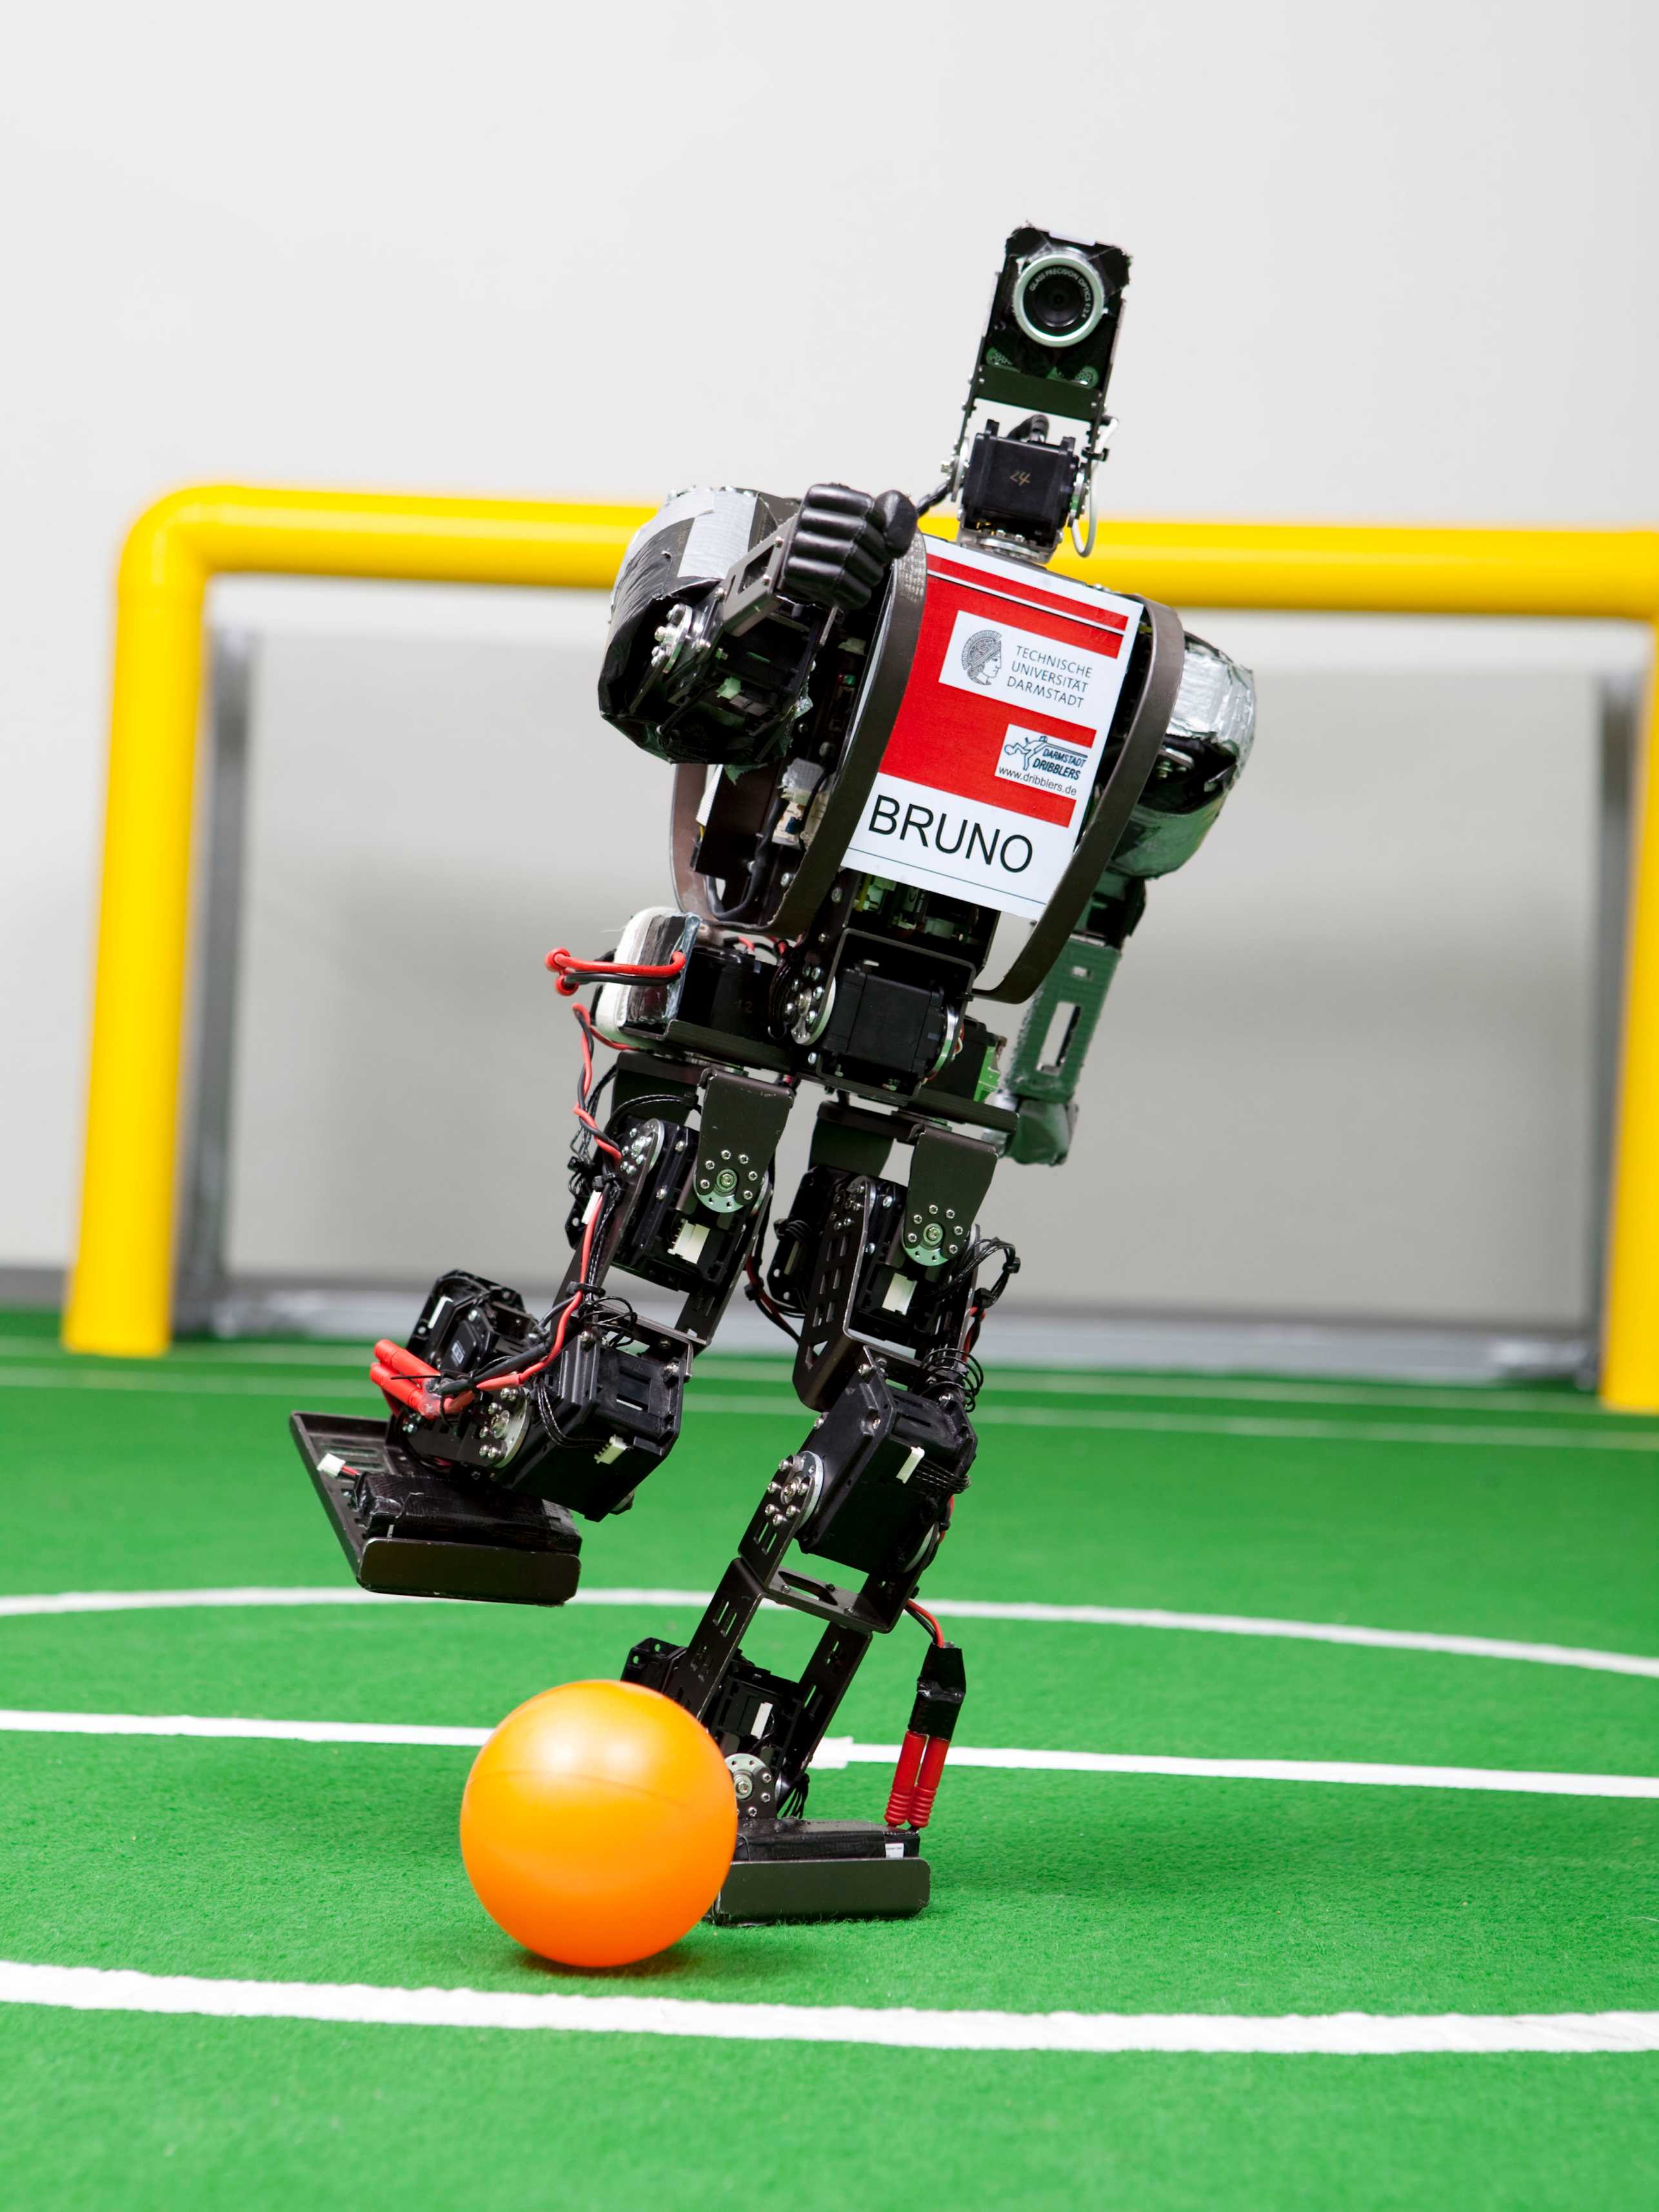 Ein Roboter in Bewegung beim Fussballspielen